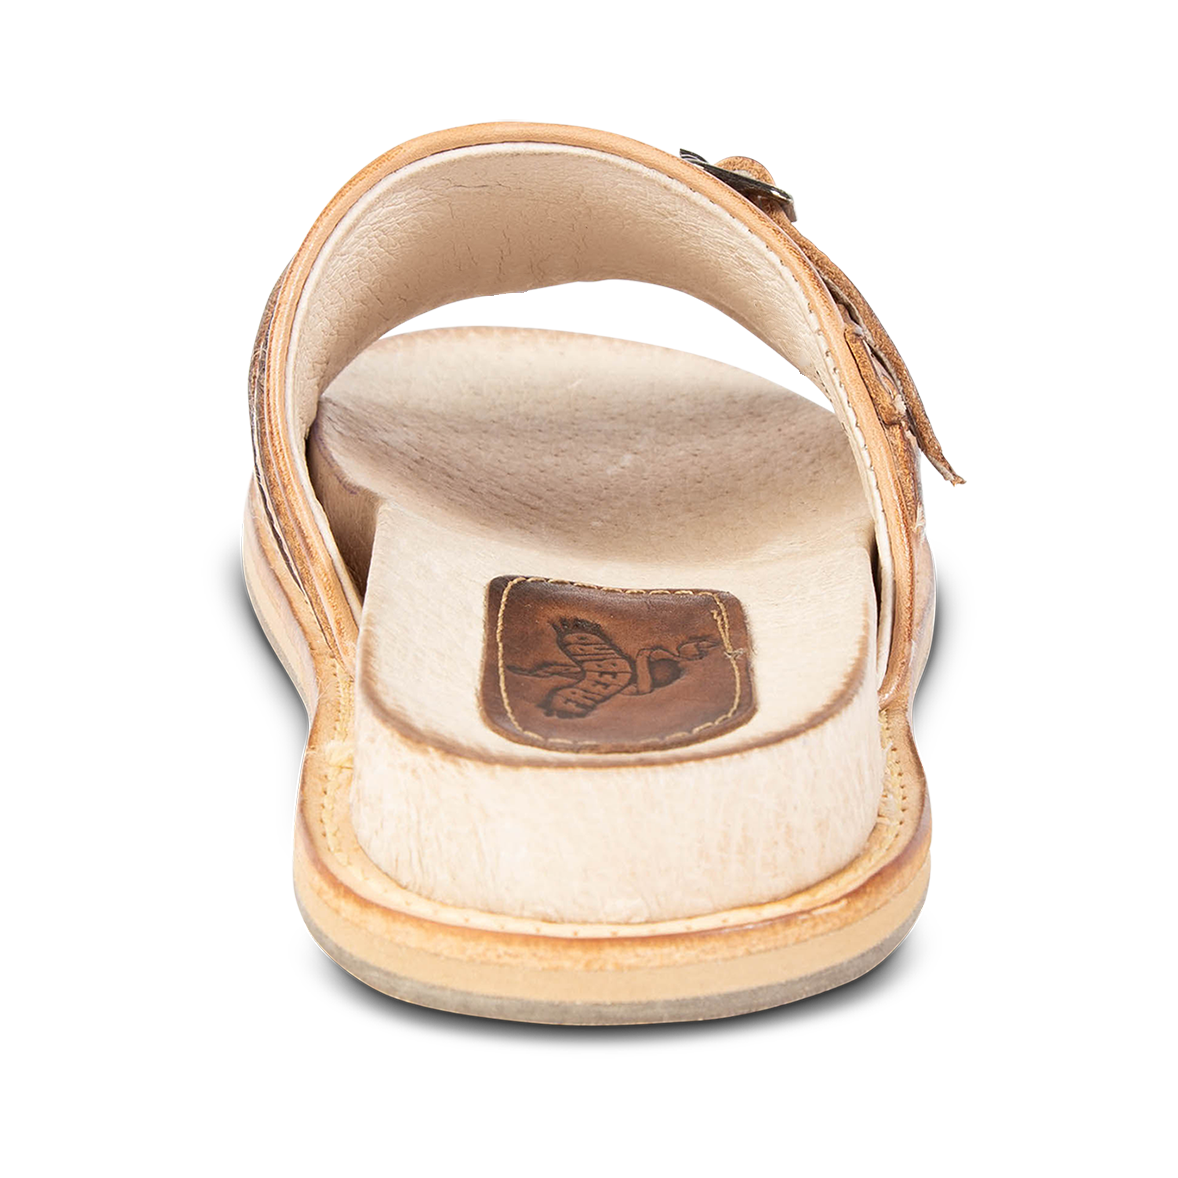 Back view showing FREEBIRD heel on women's Fleetwood camel flat slip-on sandal